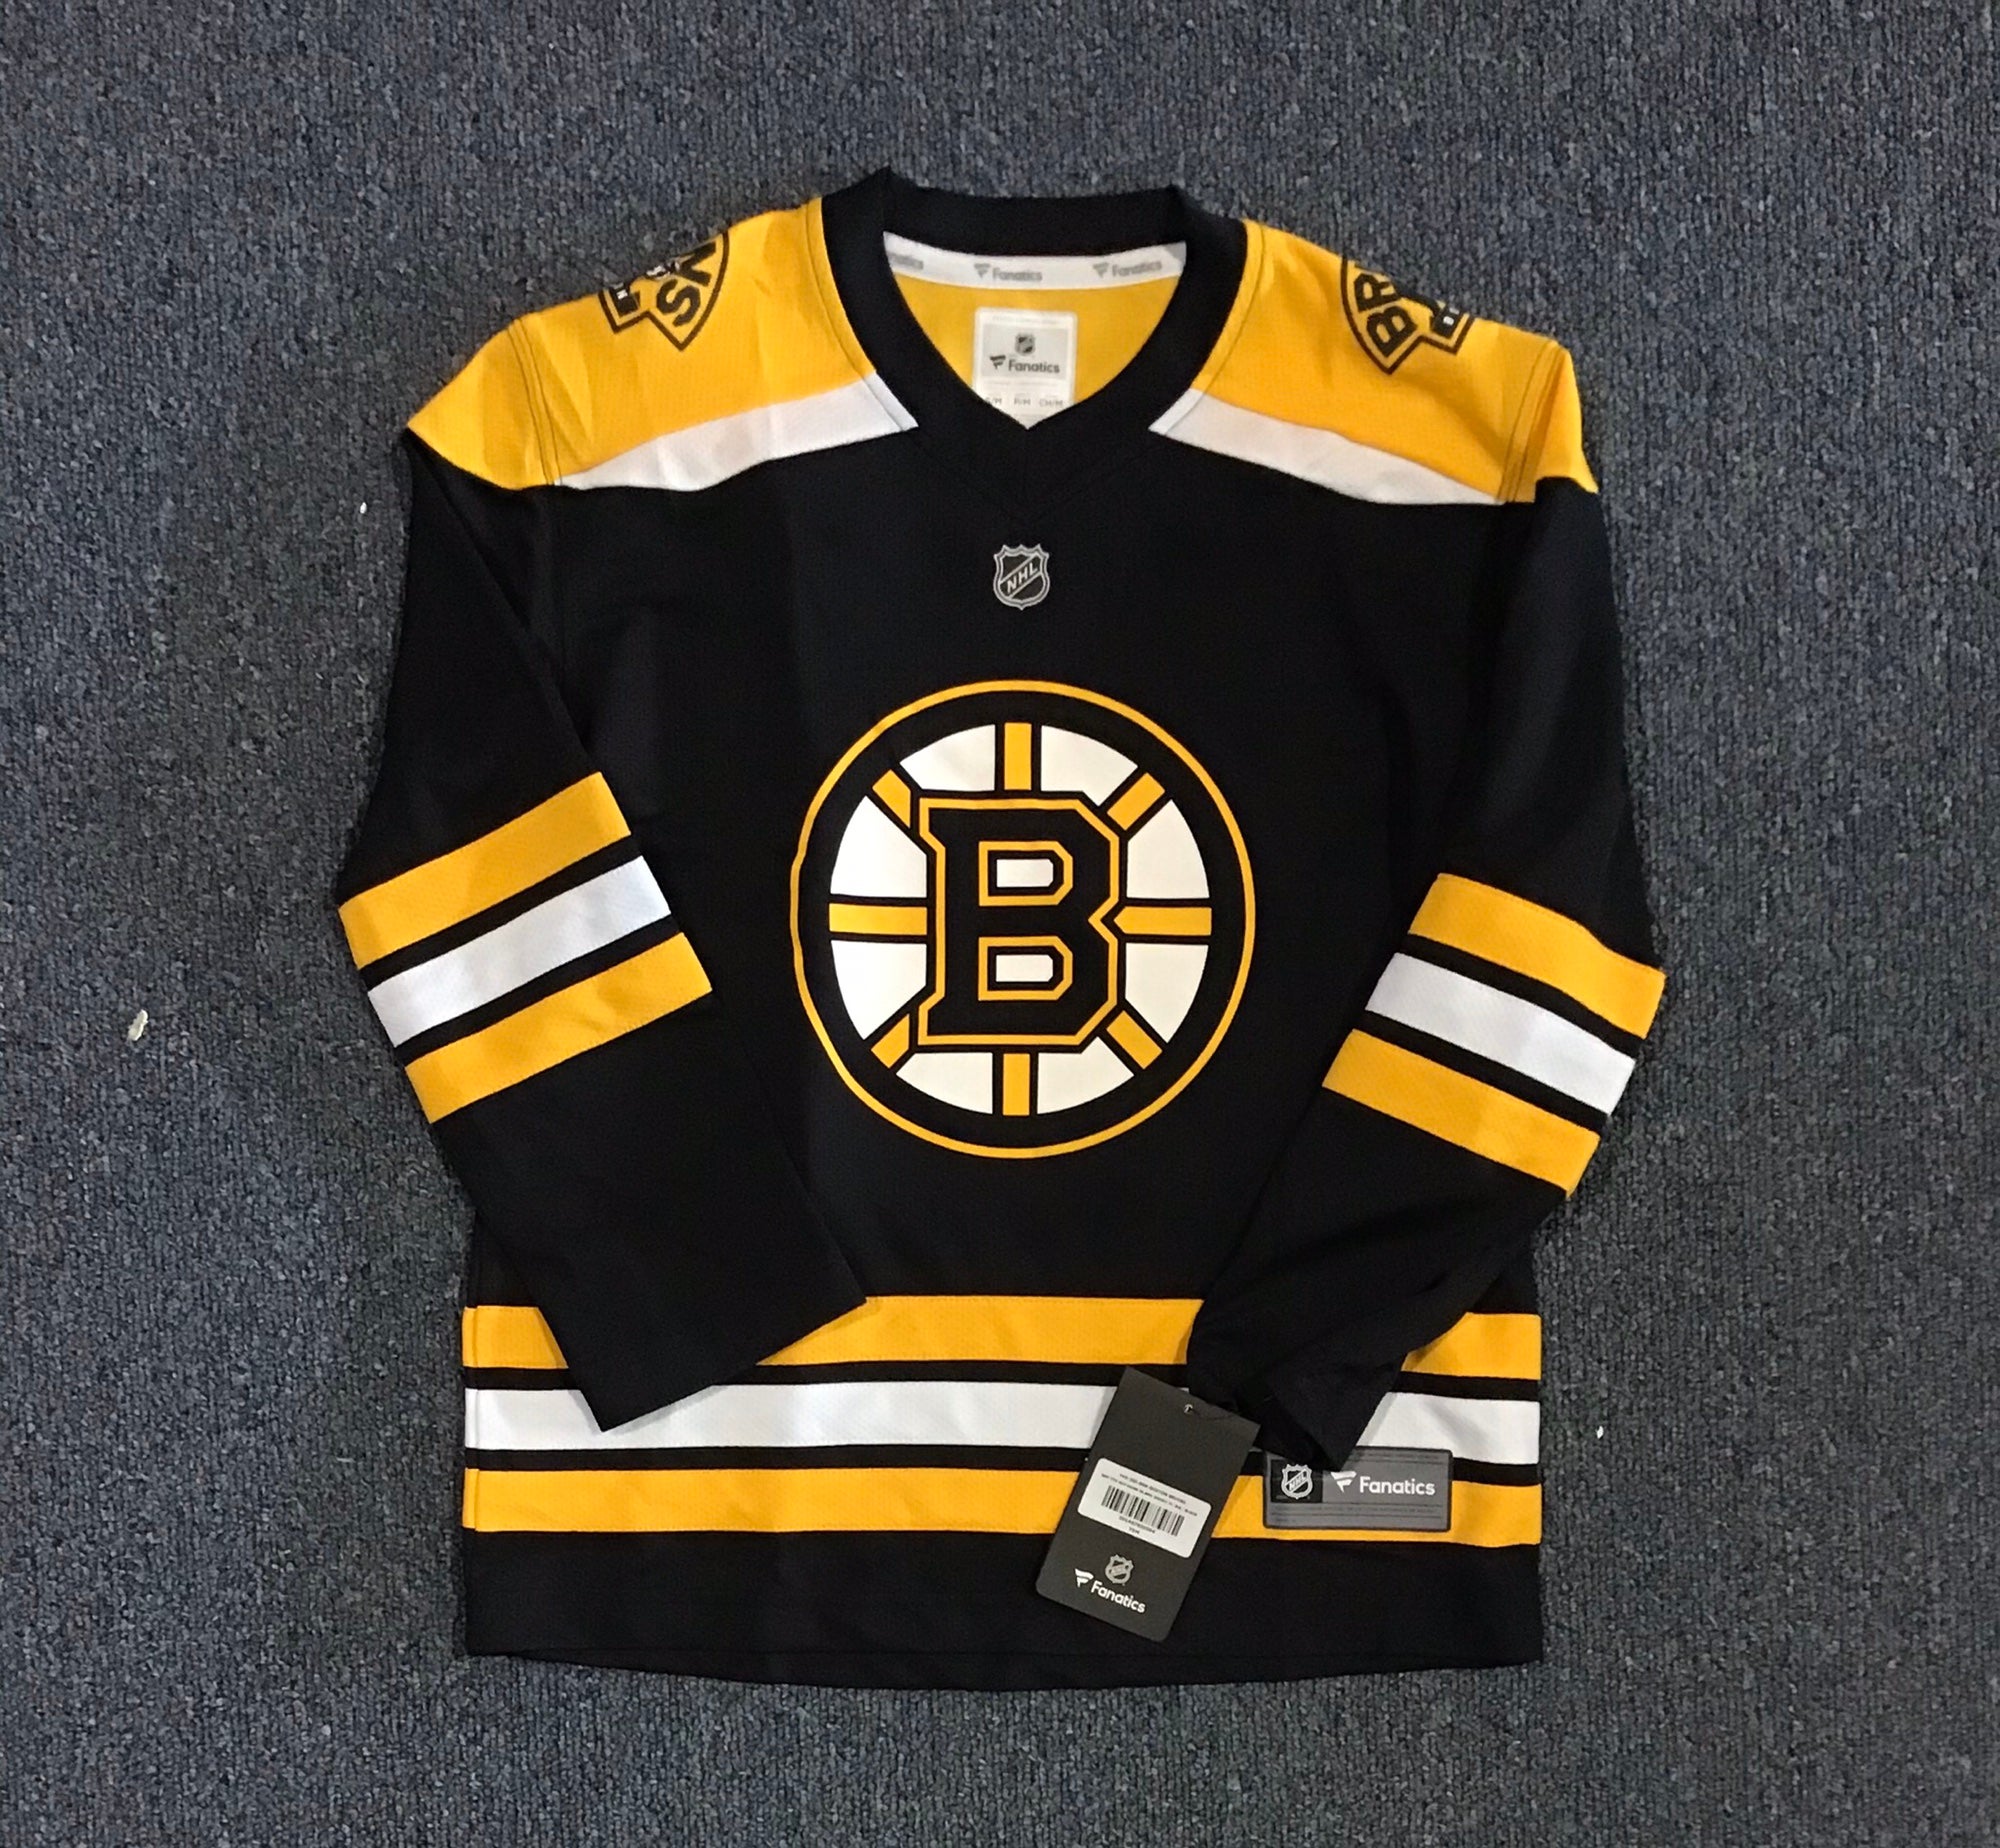 Boston Bruins Apparel, Boston Bruins Jerseys, Boston Bruins Gear